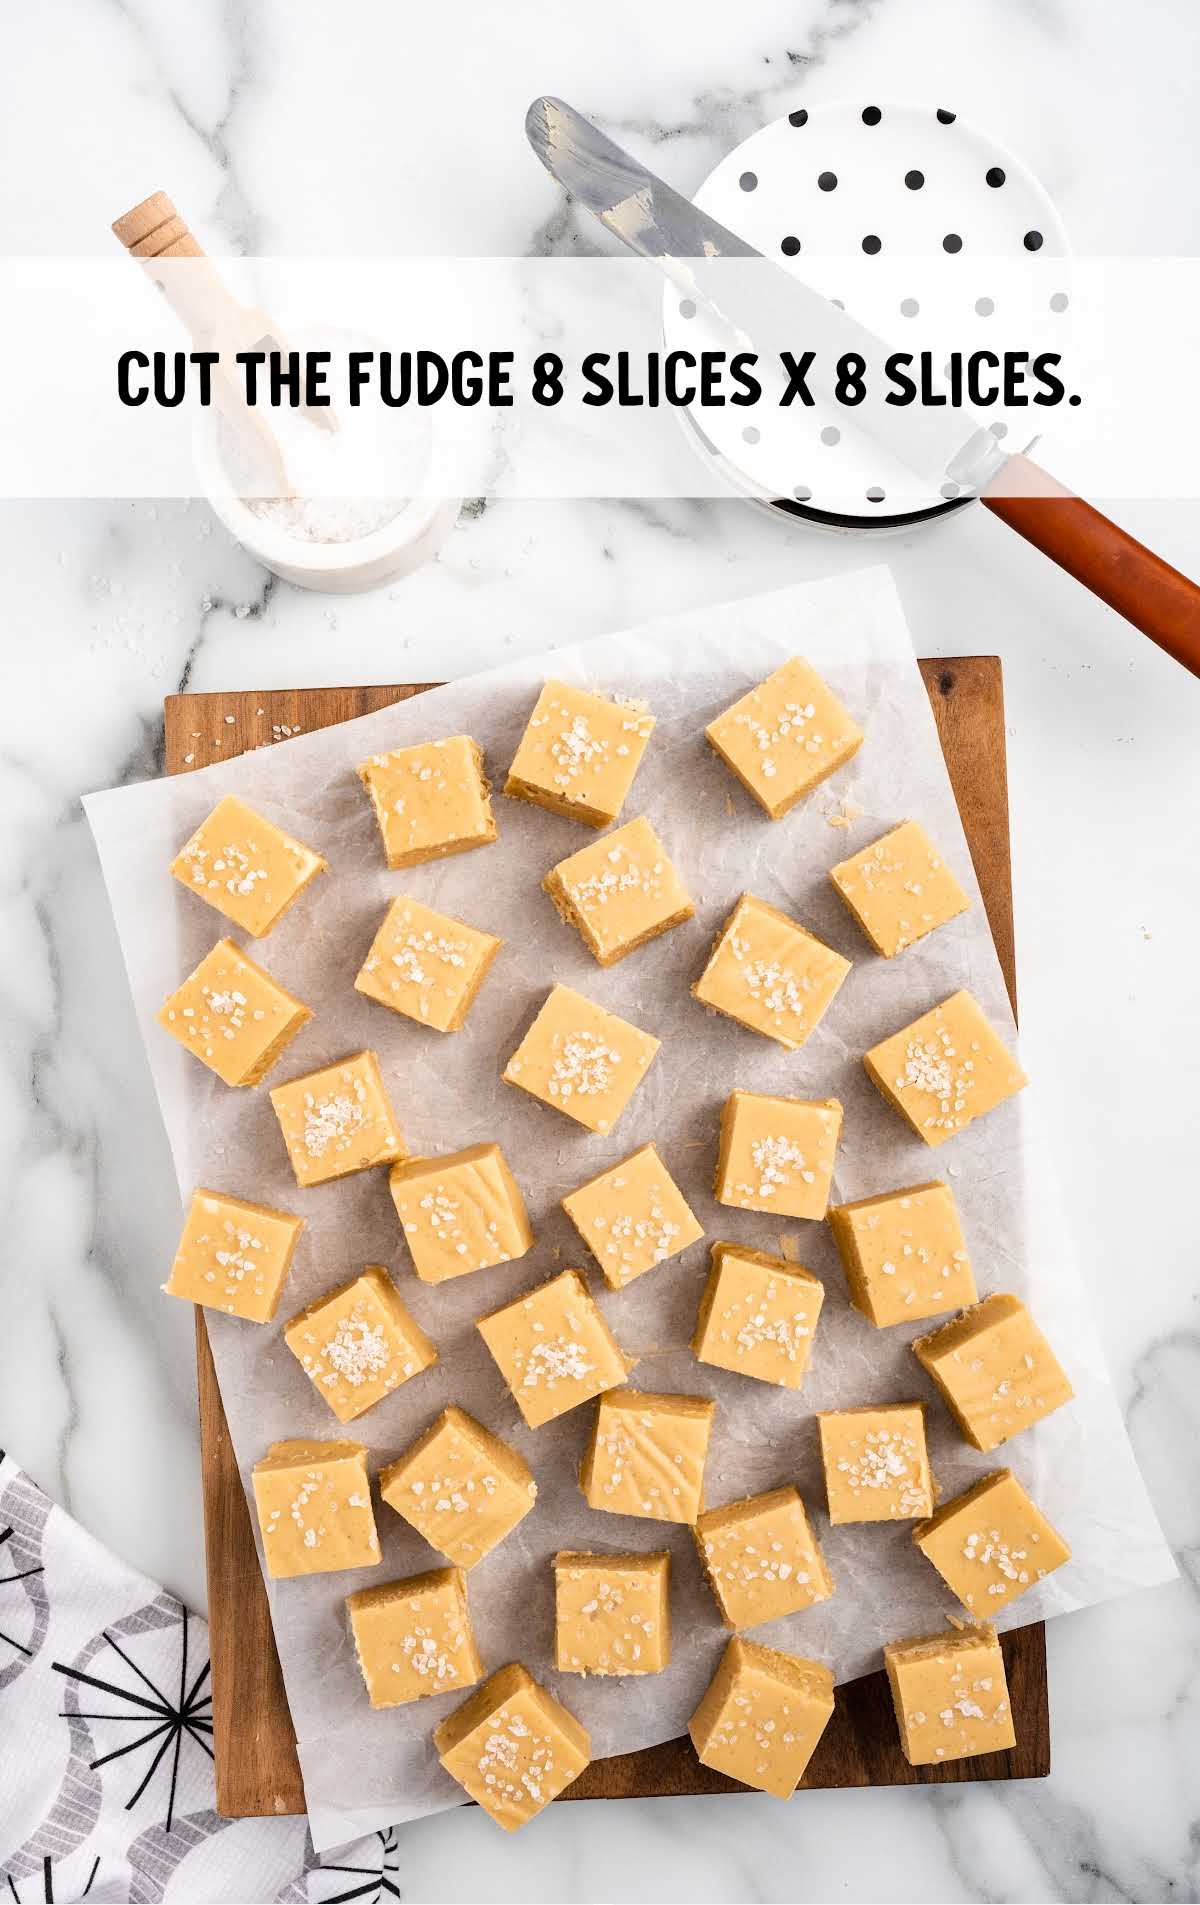 fudges cut into 8 slices on a parchment paper